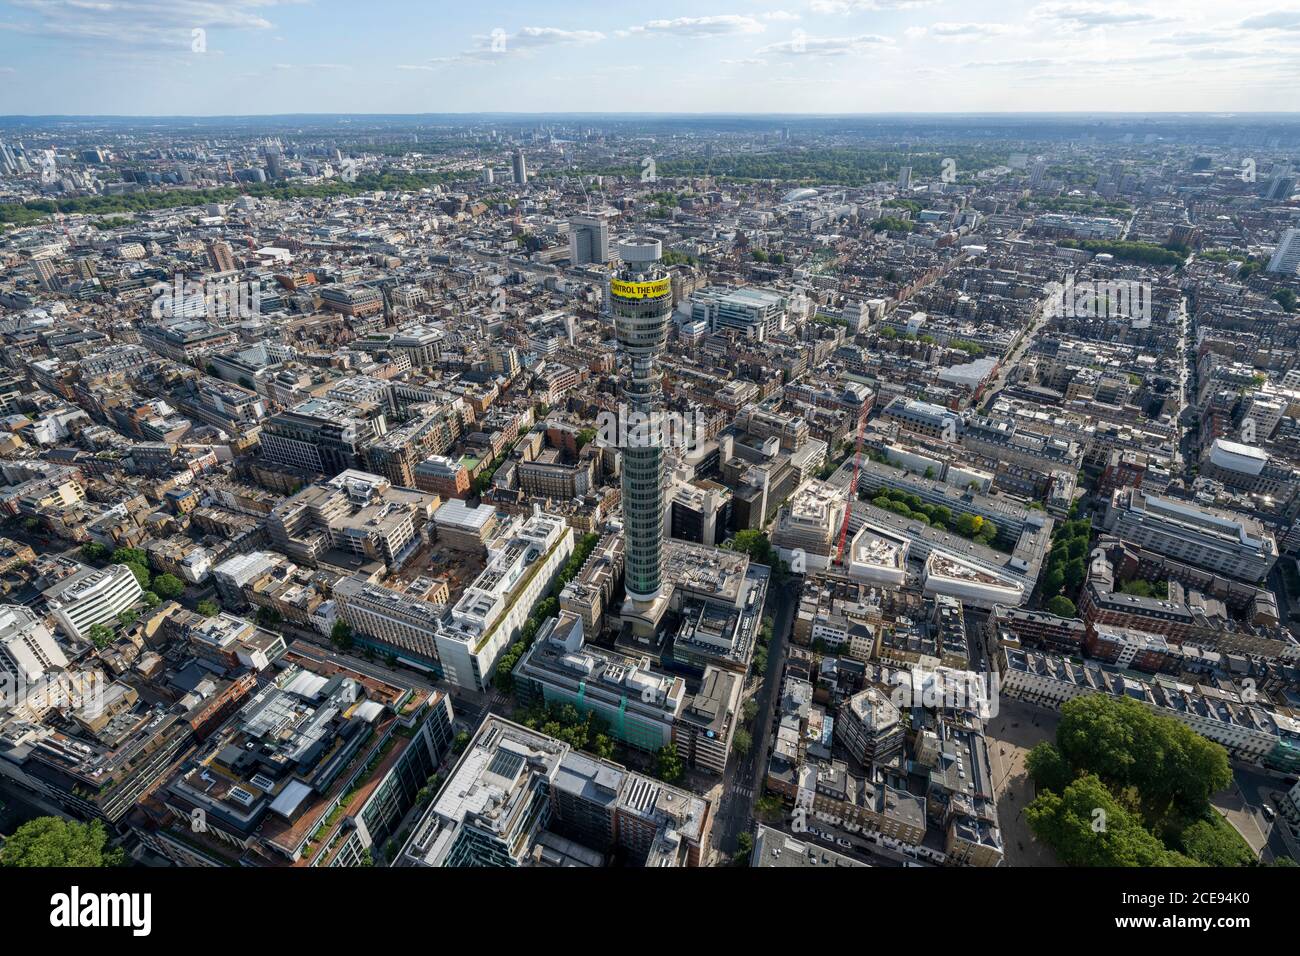 Vue aérienne de Londres avec la Tour BT. Banque D'Images